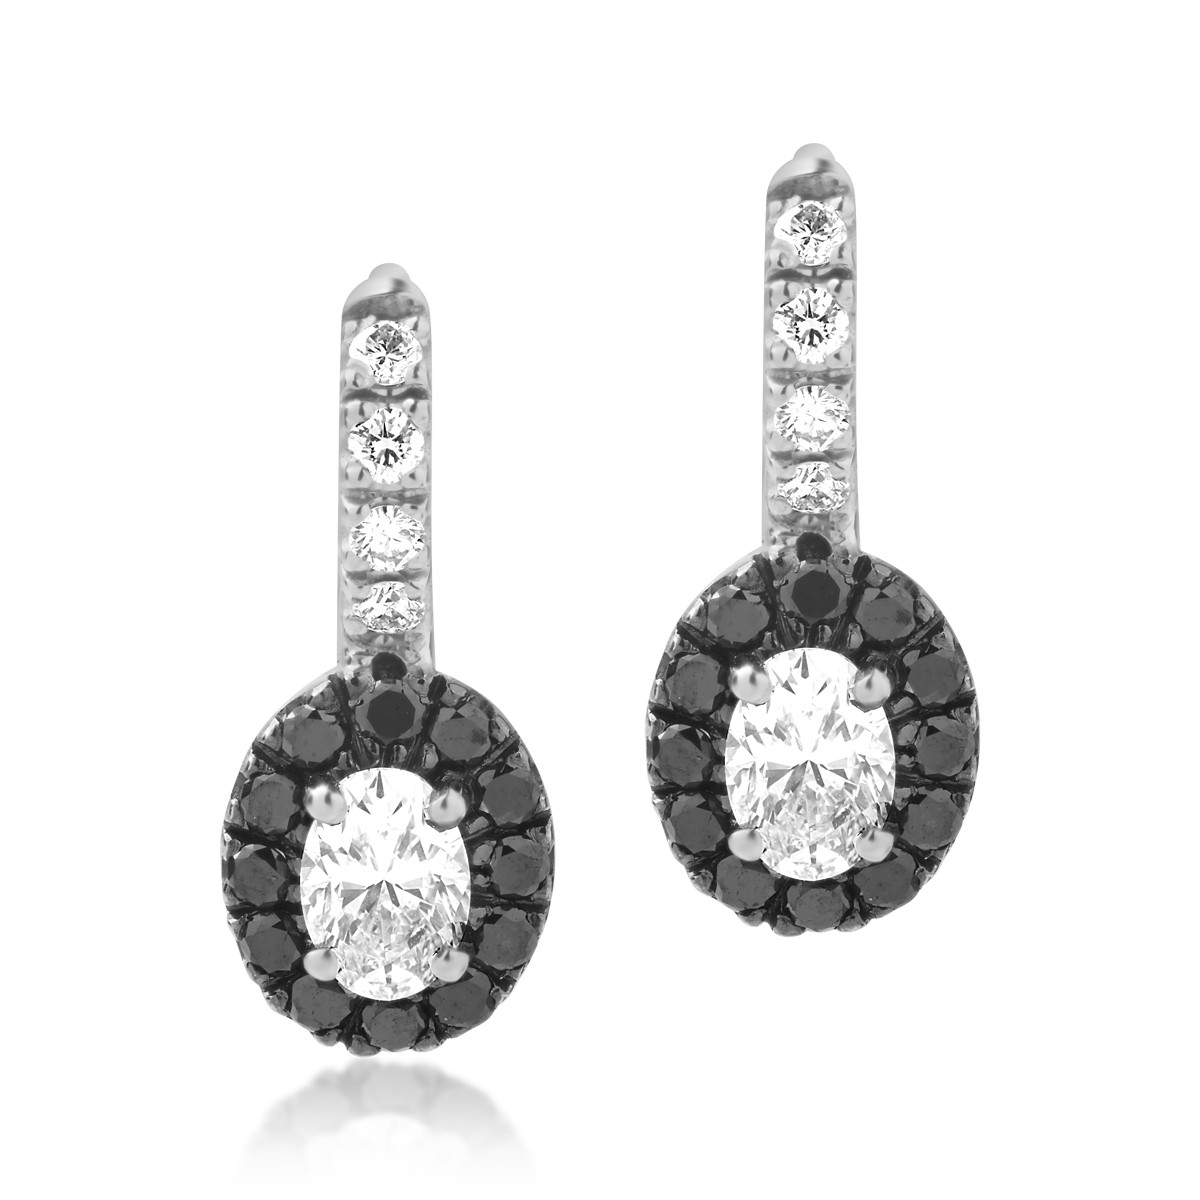 18 karátos fehérarany fülbevaló 0,74 karátos tiszta gyémántokkal és 0,32 karátos fekete gyémántokkal